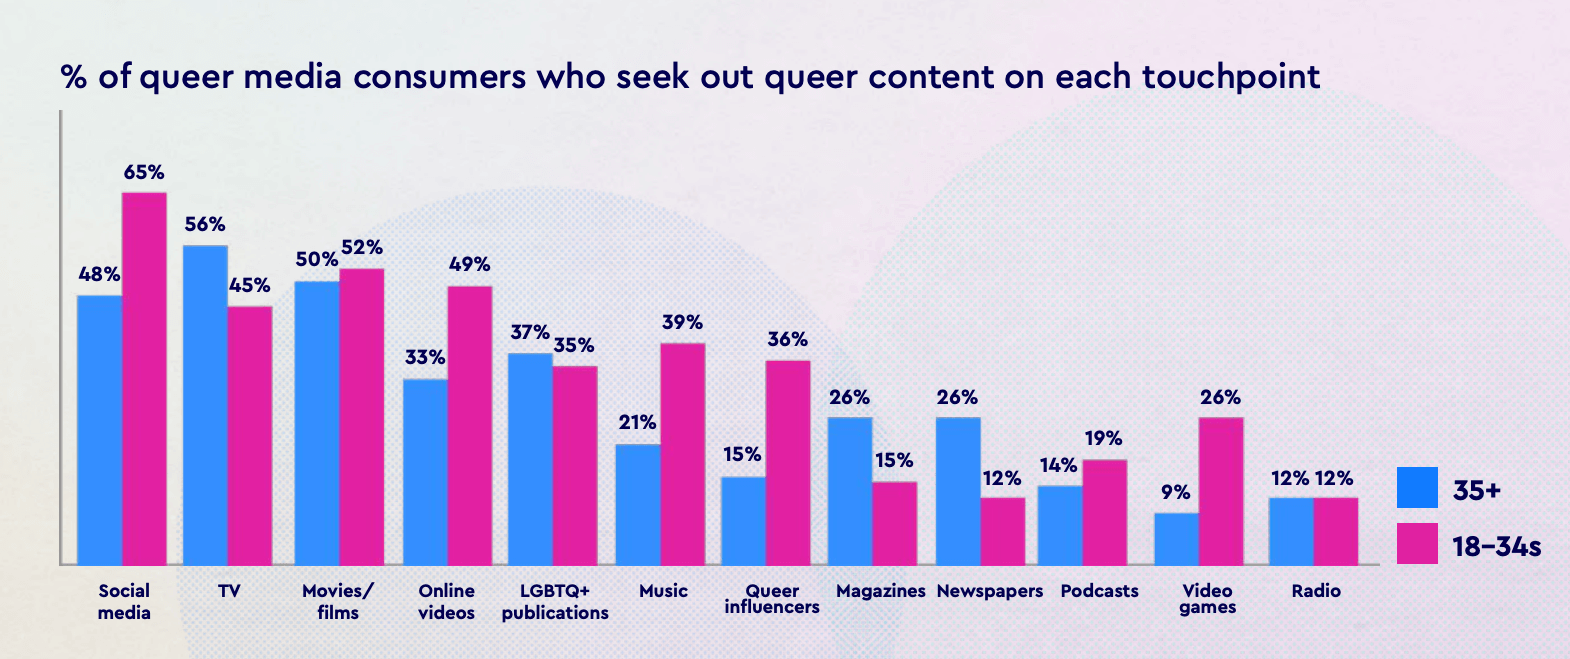 Marketing LGBTQ+: i loghi rainbow non bastano, i temi queer sono importanti tutto l'anno. E non solo per gli LGBTQ+ - media queer fruizione - Gay.it